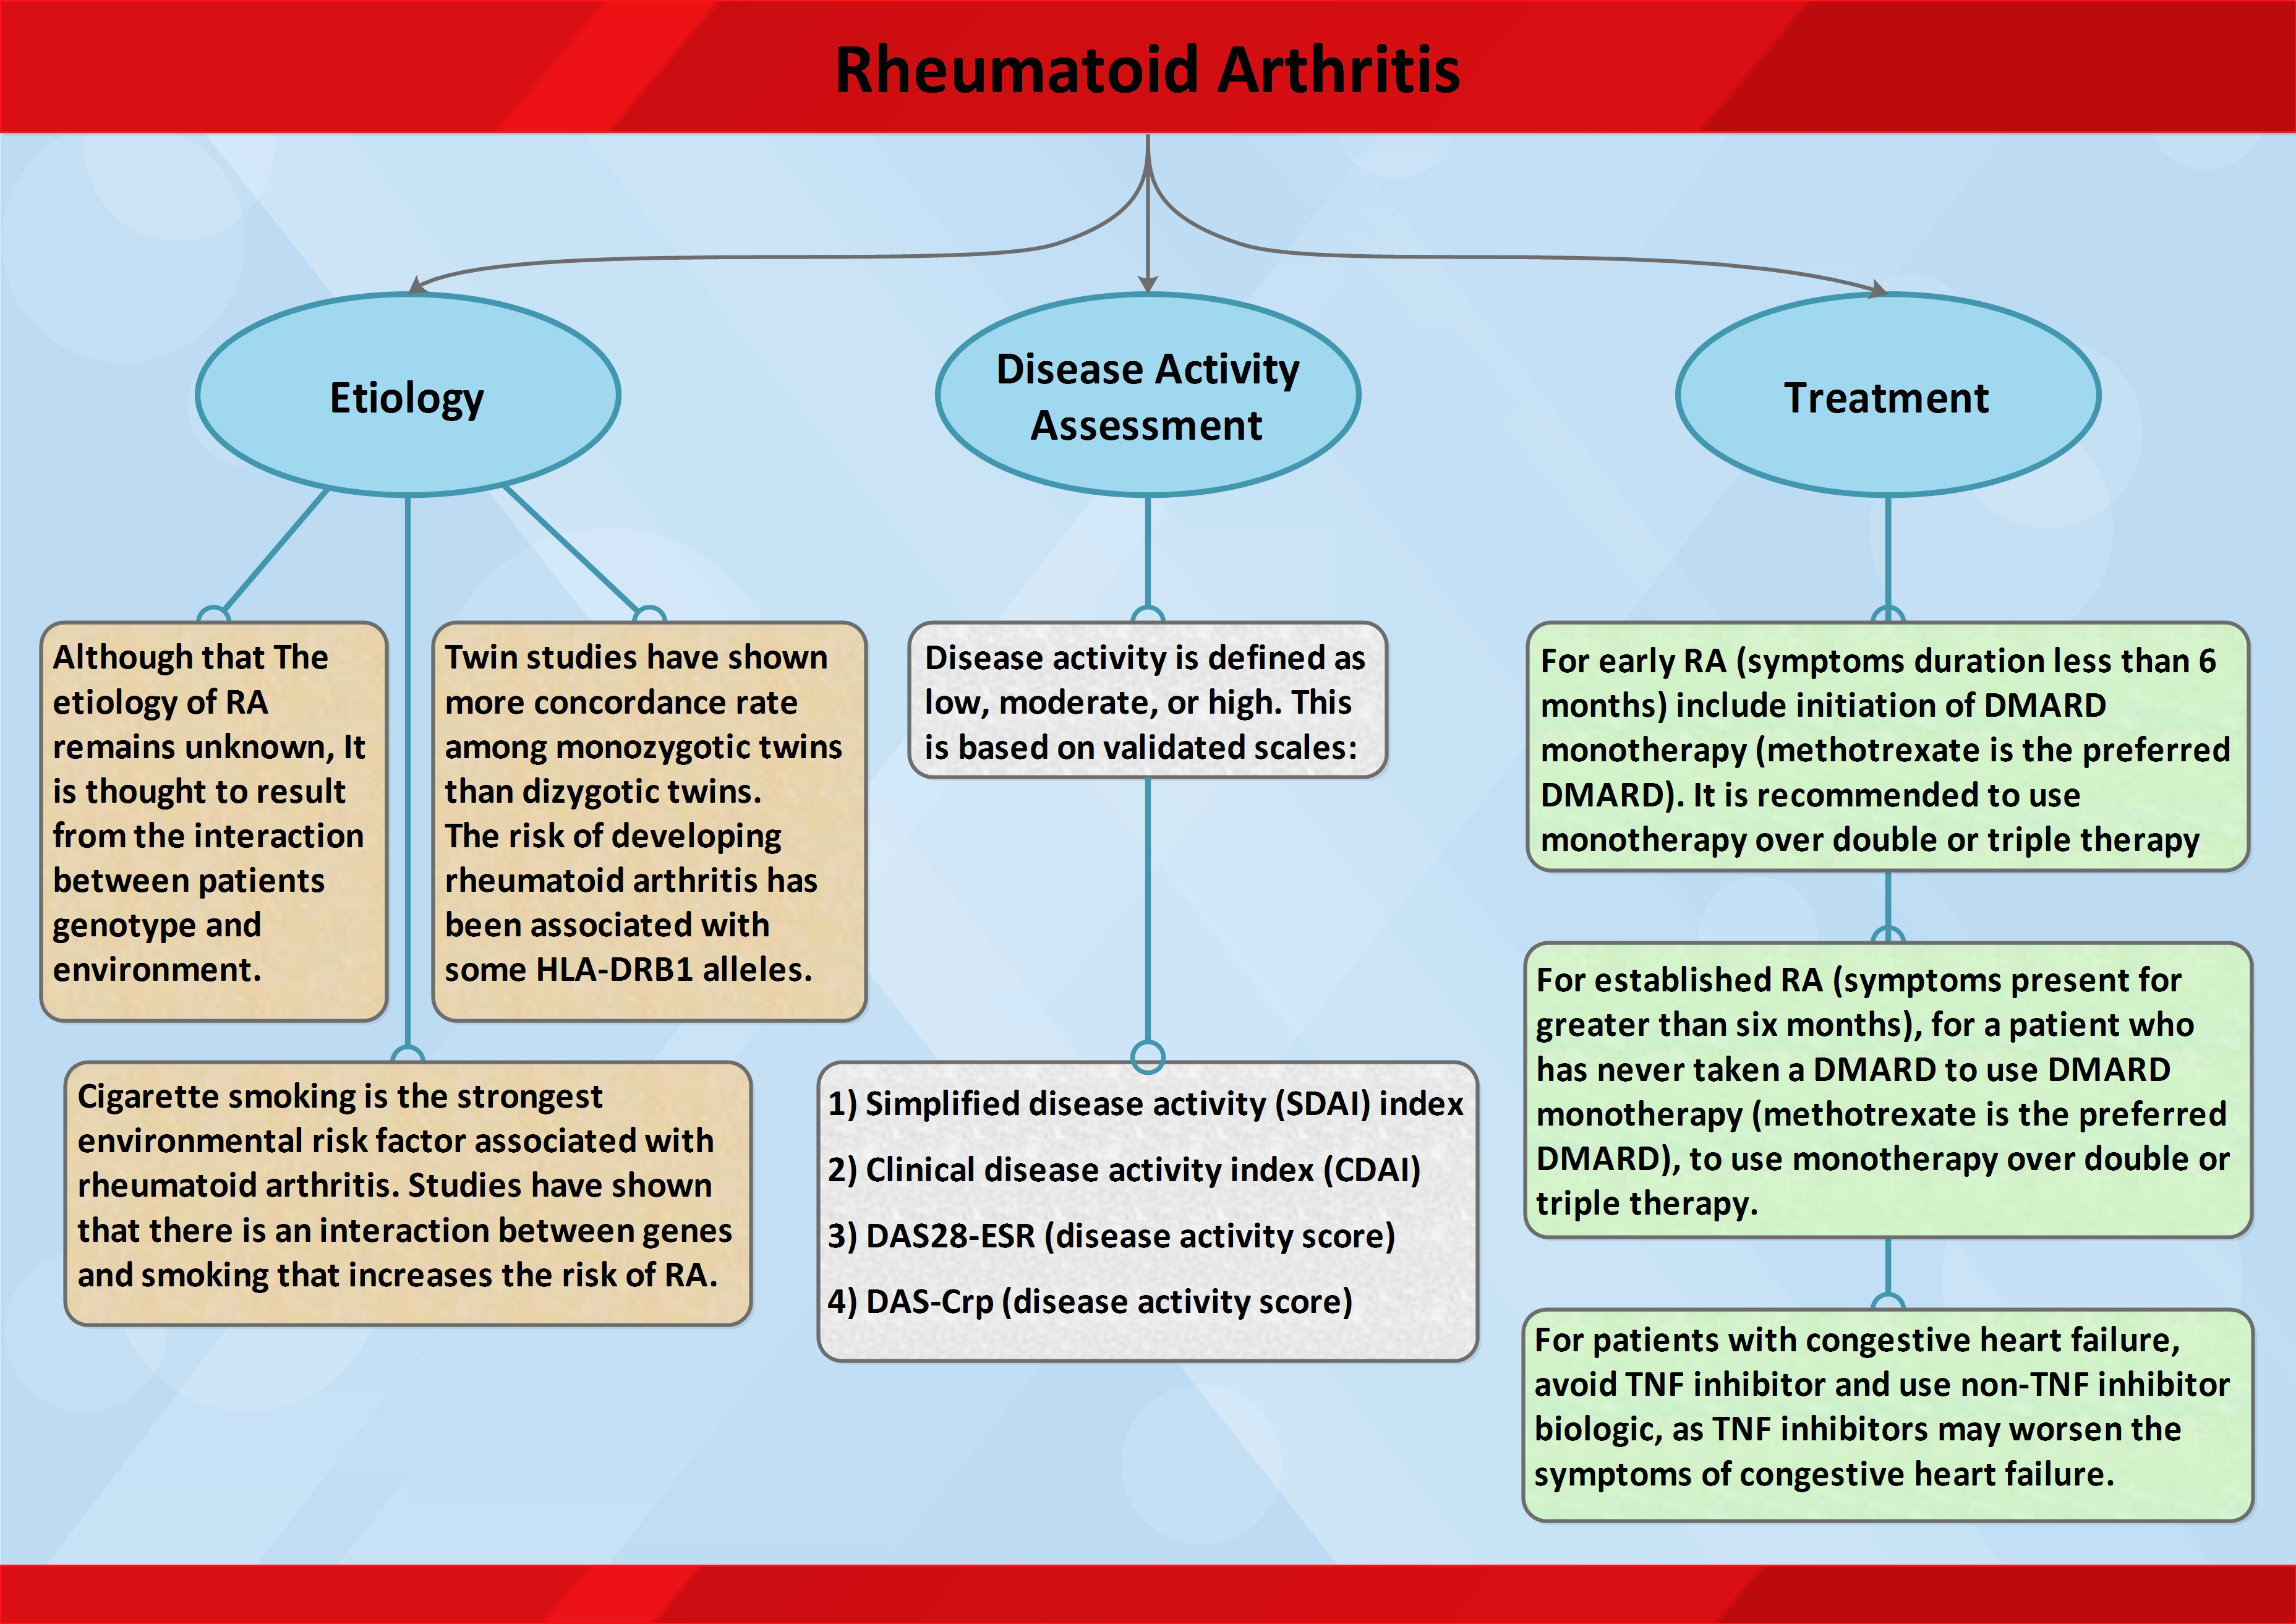 Summary keynotes on Rheumatoid Arthritis